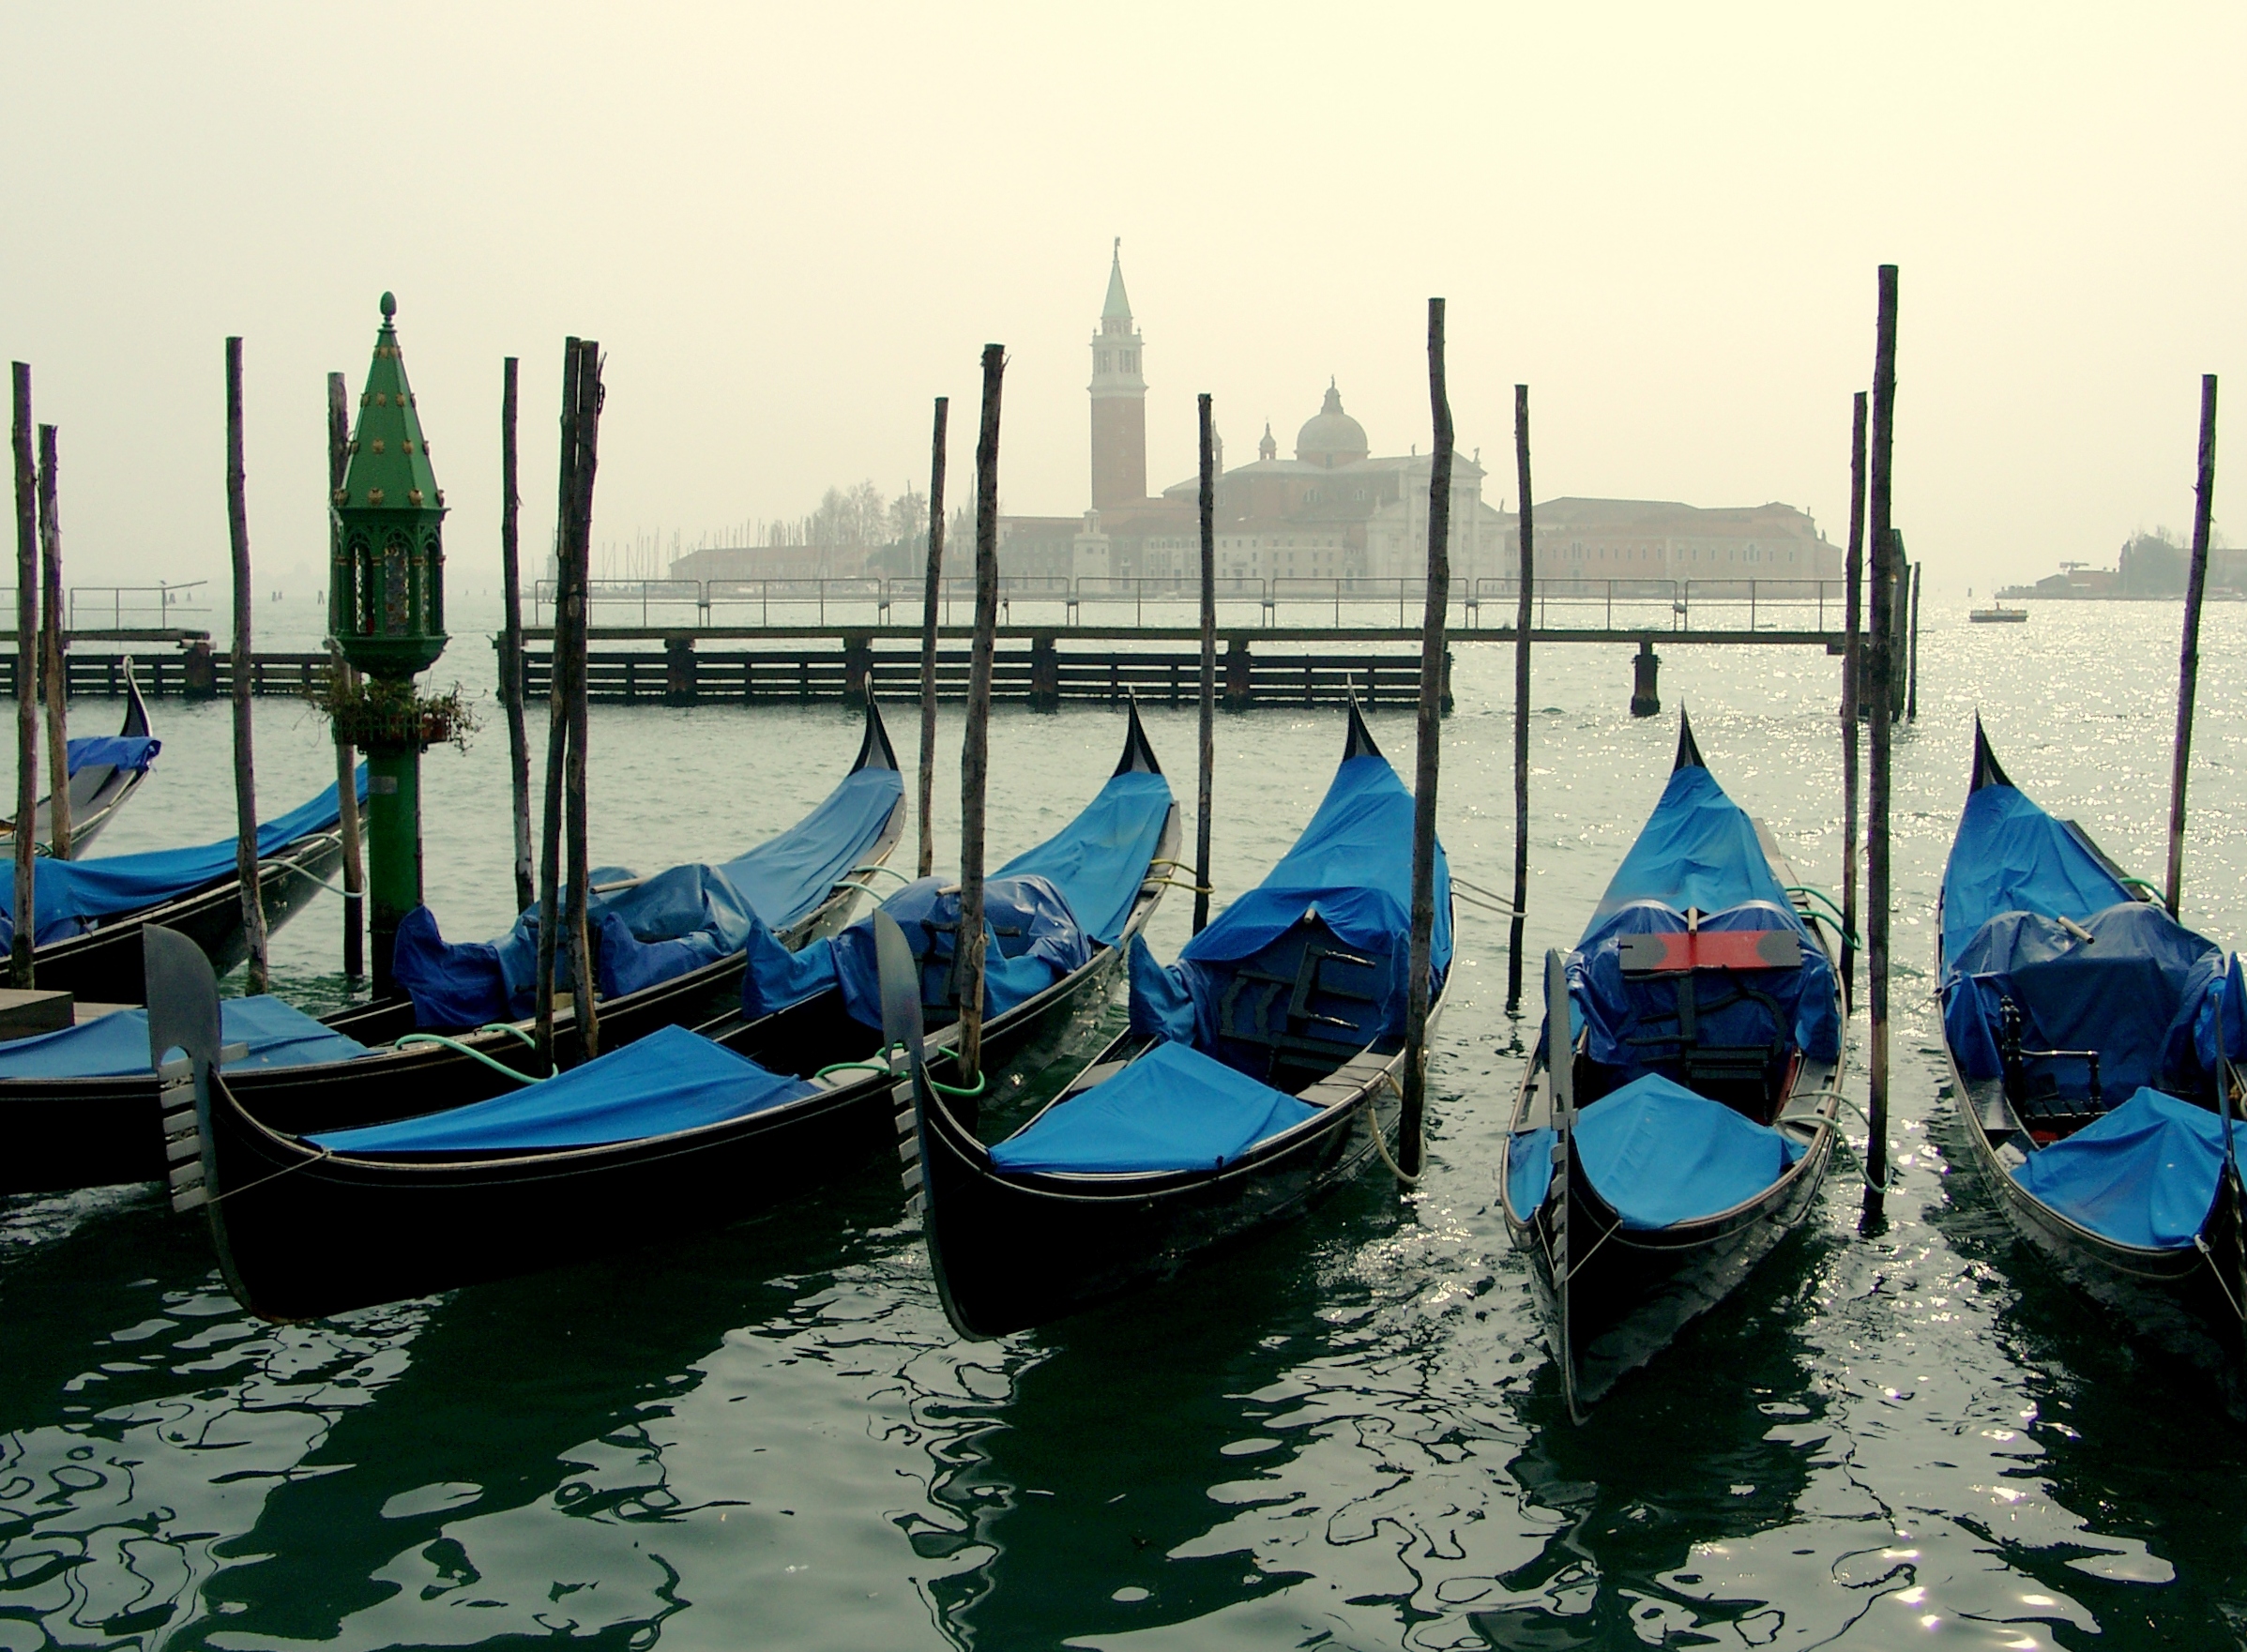 File:San Giorgio Maggiore with gondolas.jpg - Wikimedia Commons